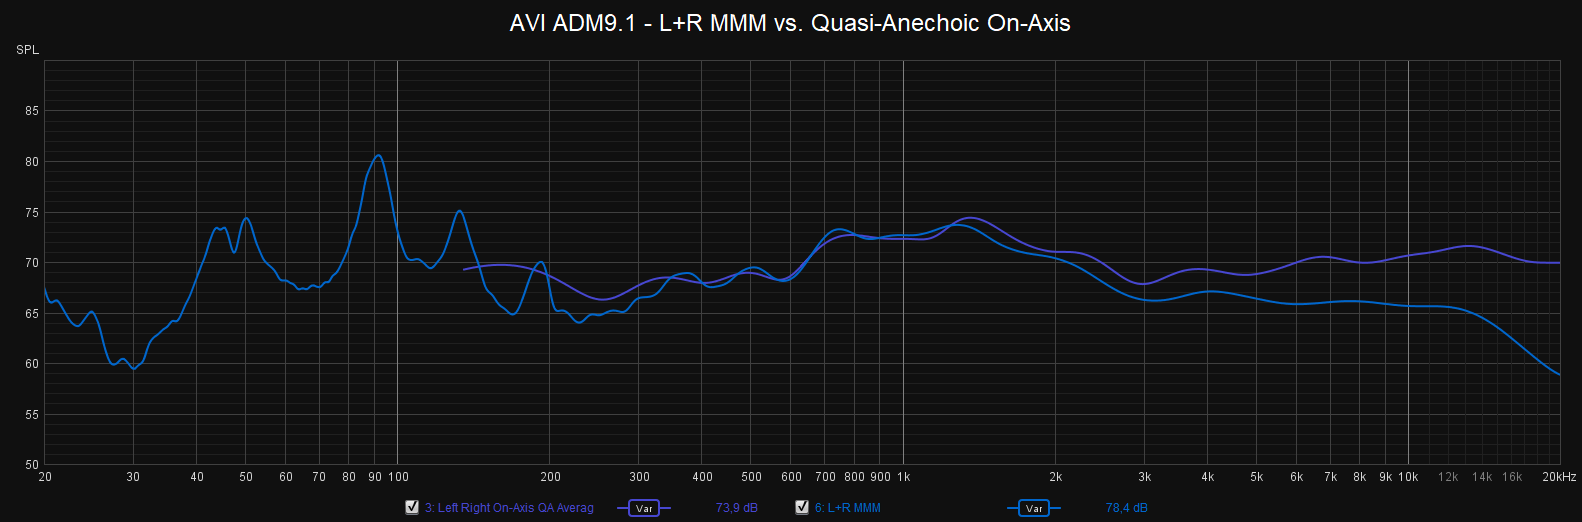 AVI ADM9_1 MMM vs QA.png